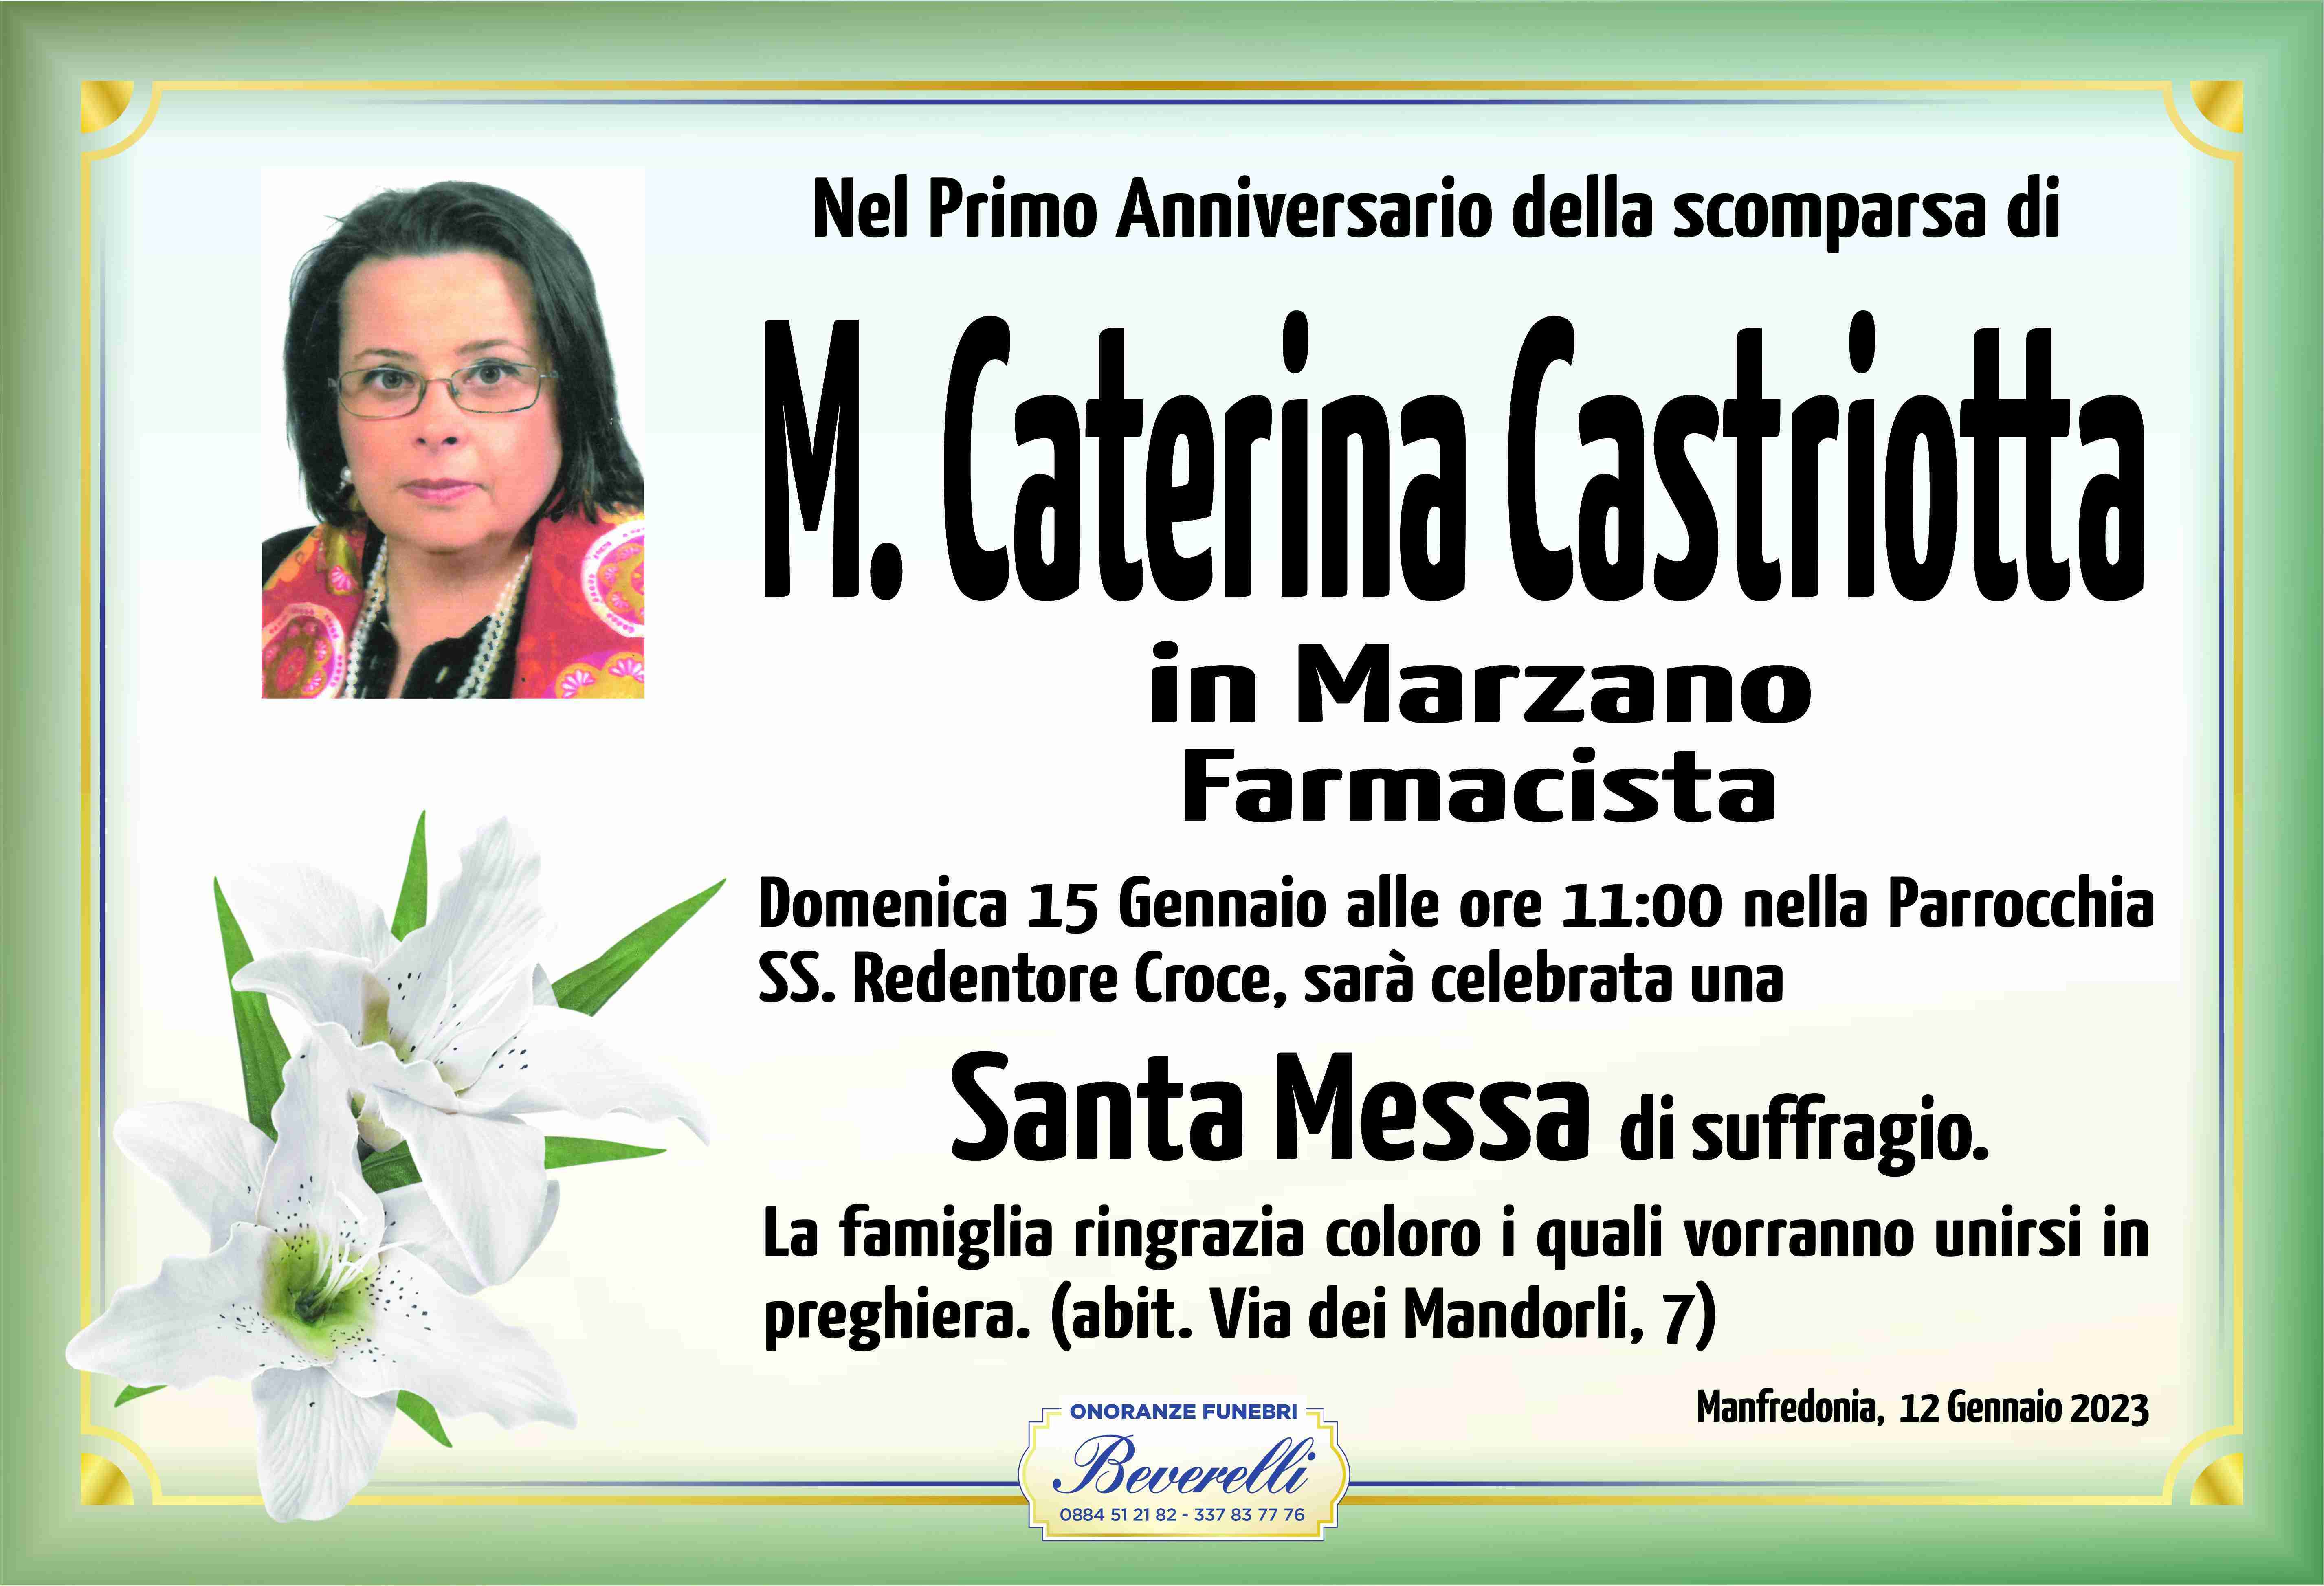 Maria Caterina Castriotta